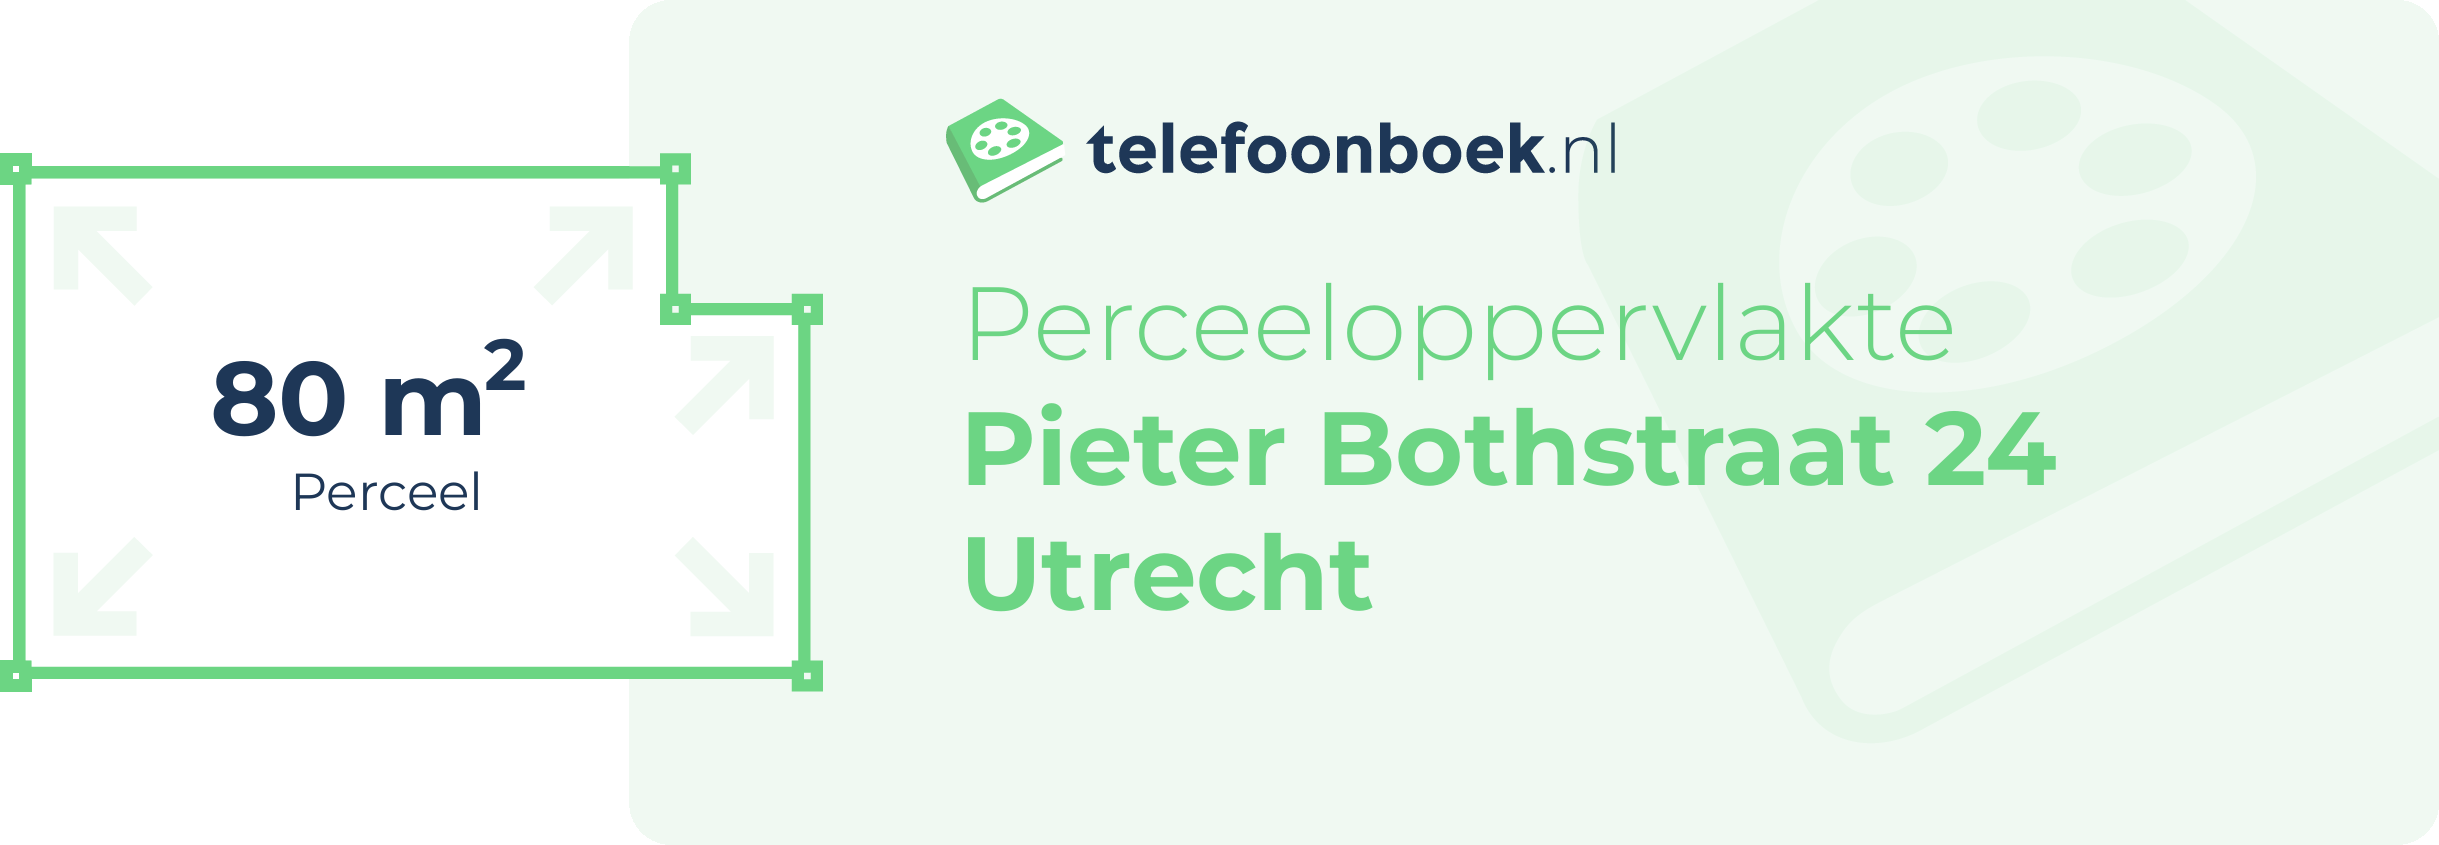 Perceeloppervlakte Pieter Bothstraat 24 Utrecht